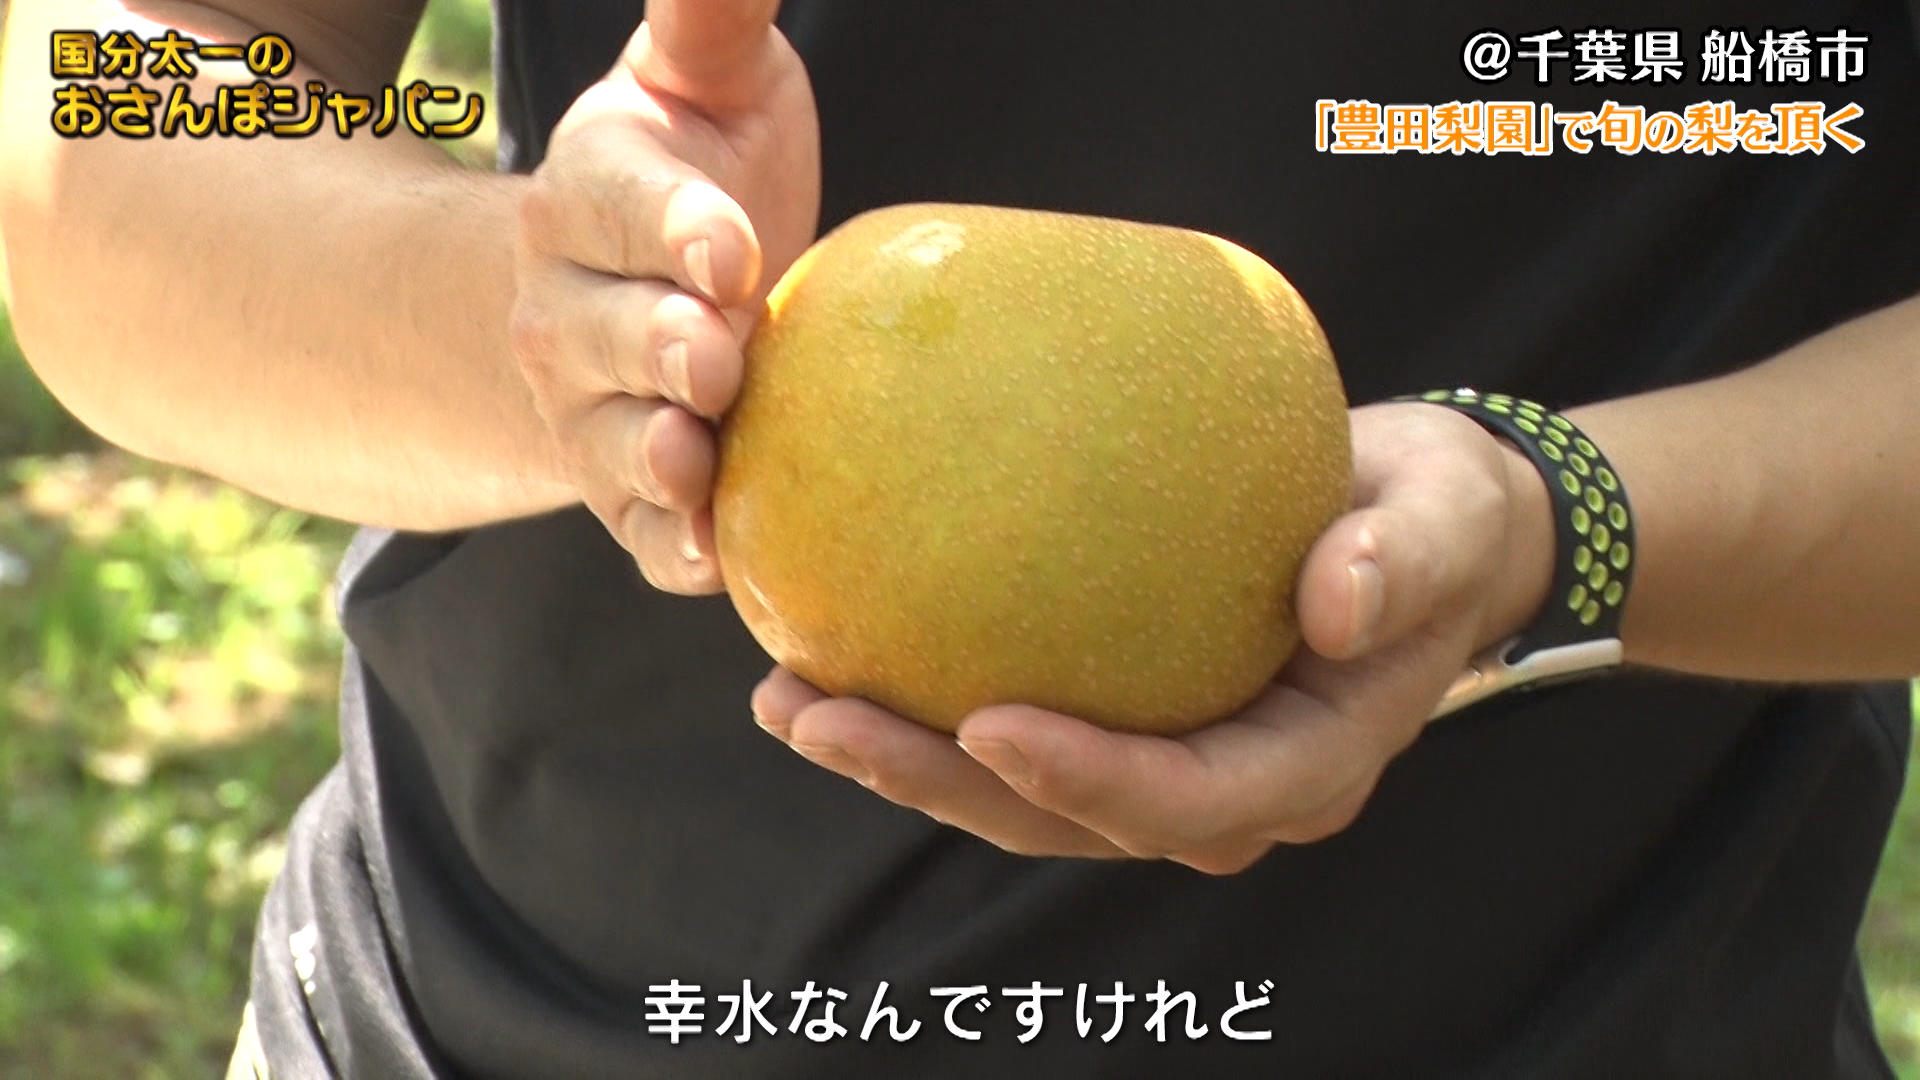 千葉県船橋市「旬を迎えた梨を頂きます」 | 国分太一のおさんぽジャパン